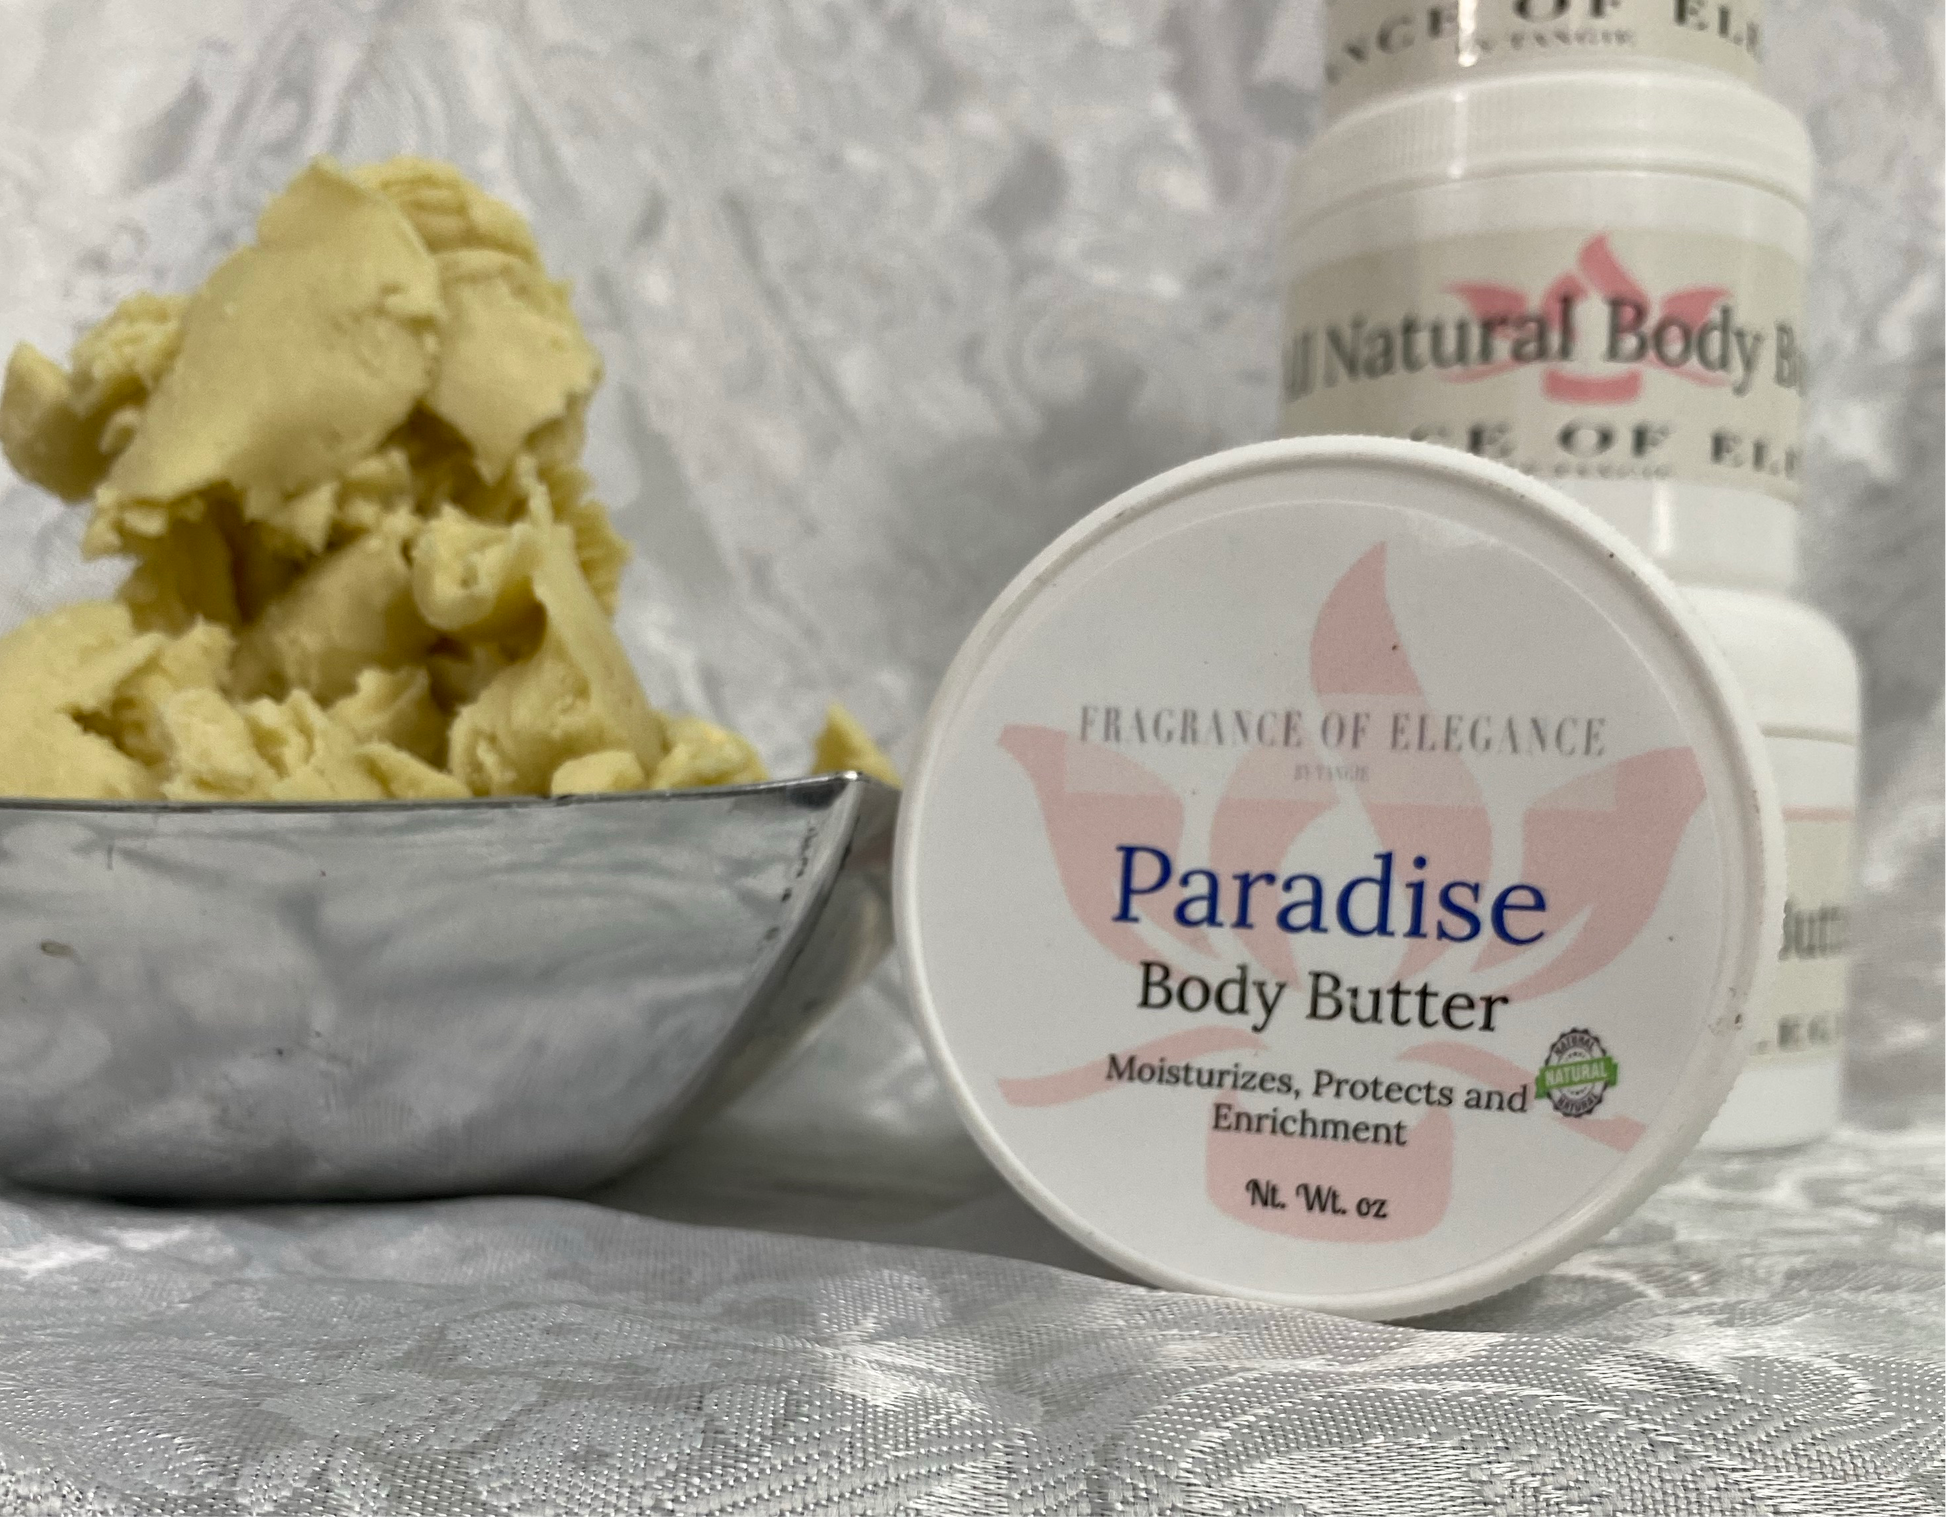 Paradise Body Butter - Fragrance of Elegance